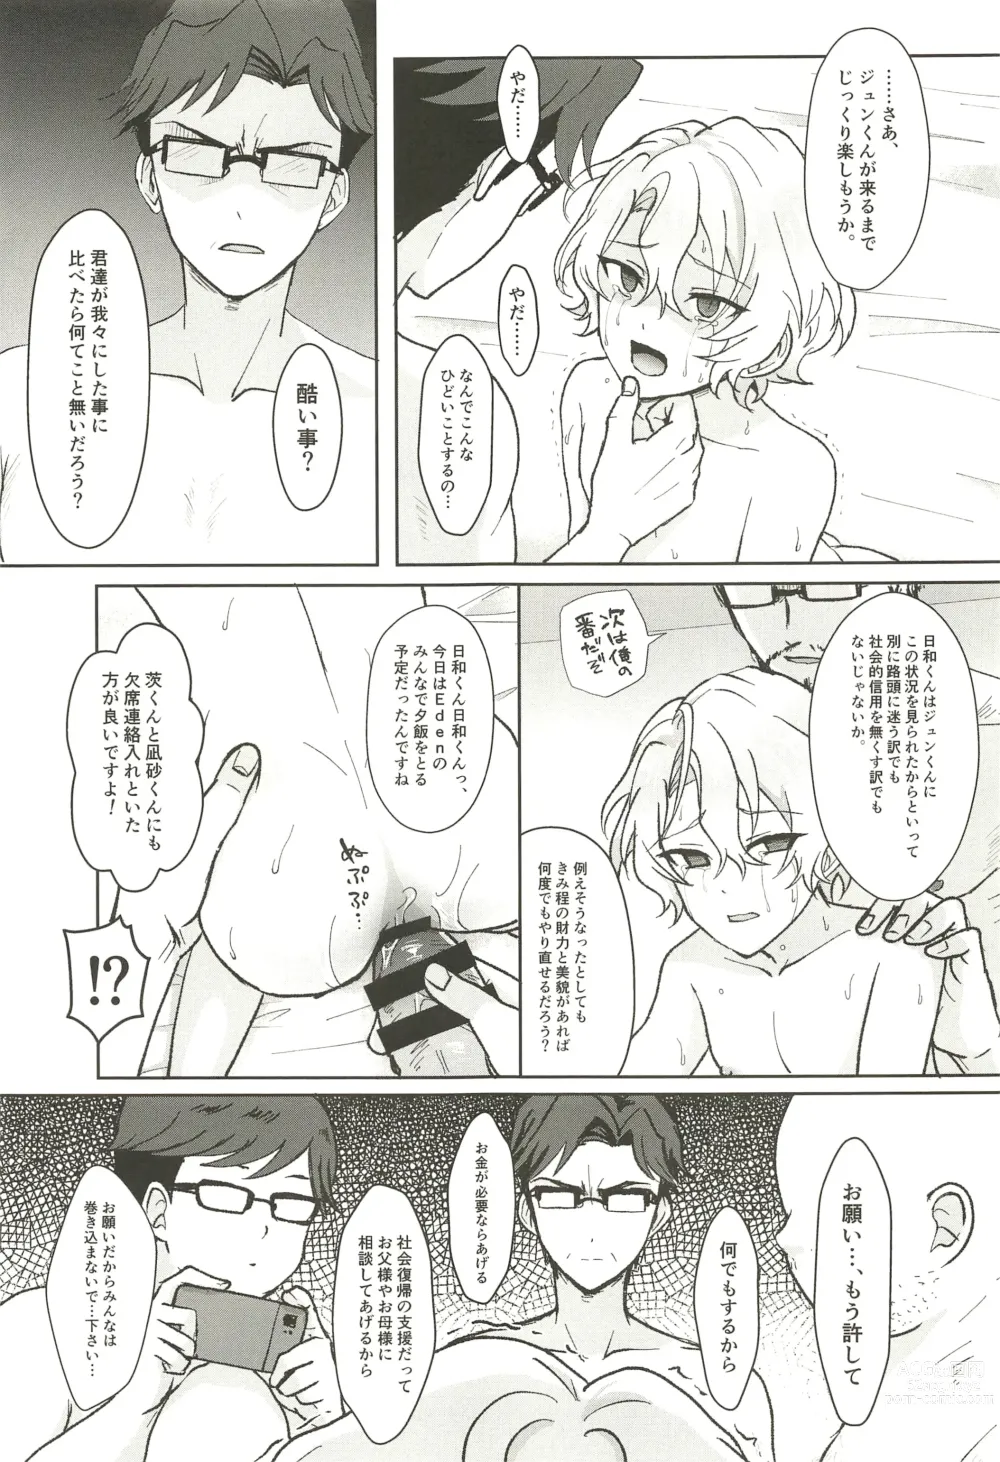 Page 63 of doujinshi Ochiru.